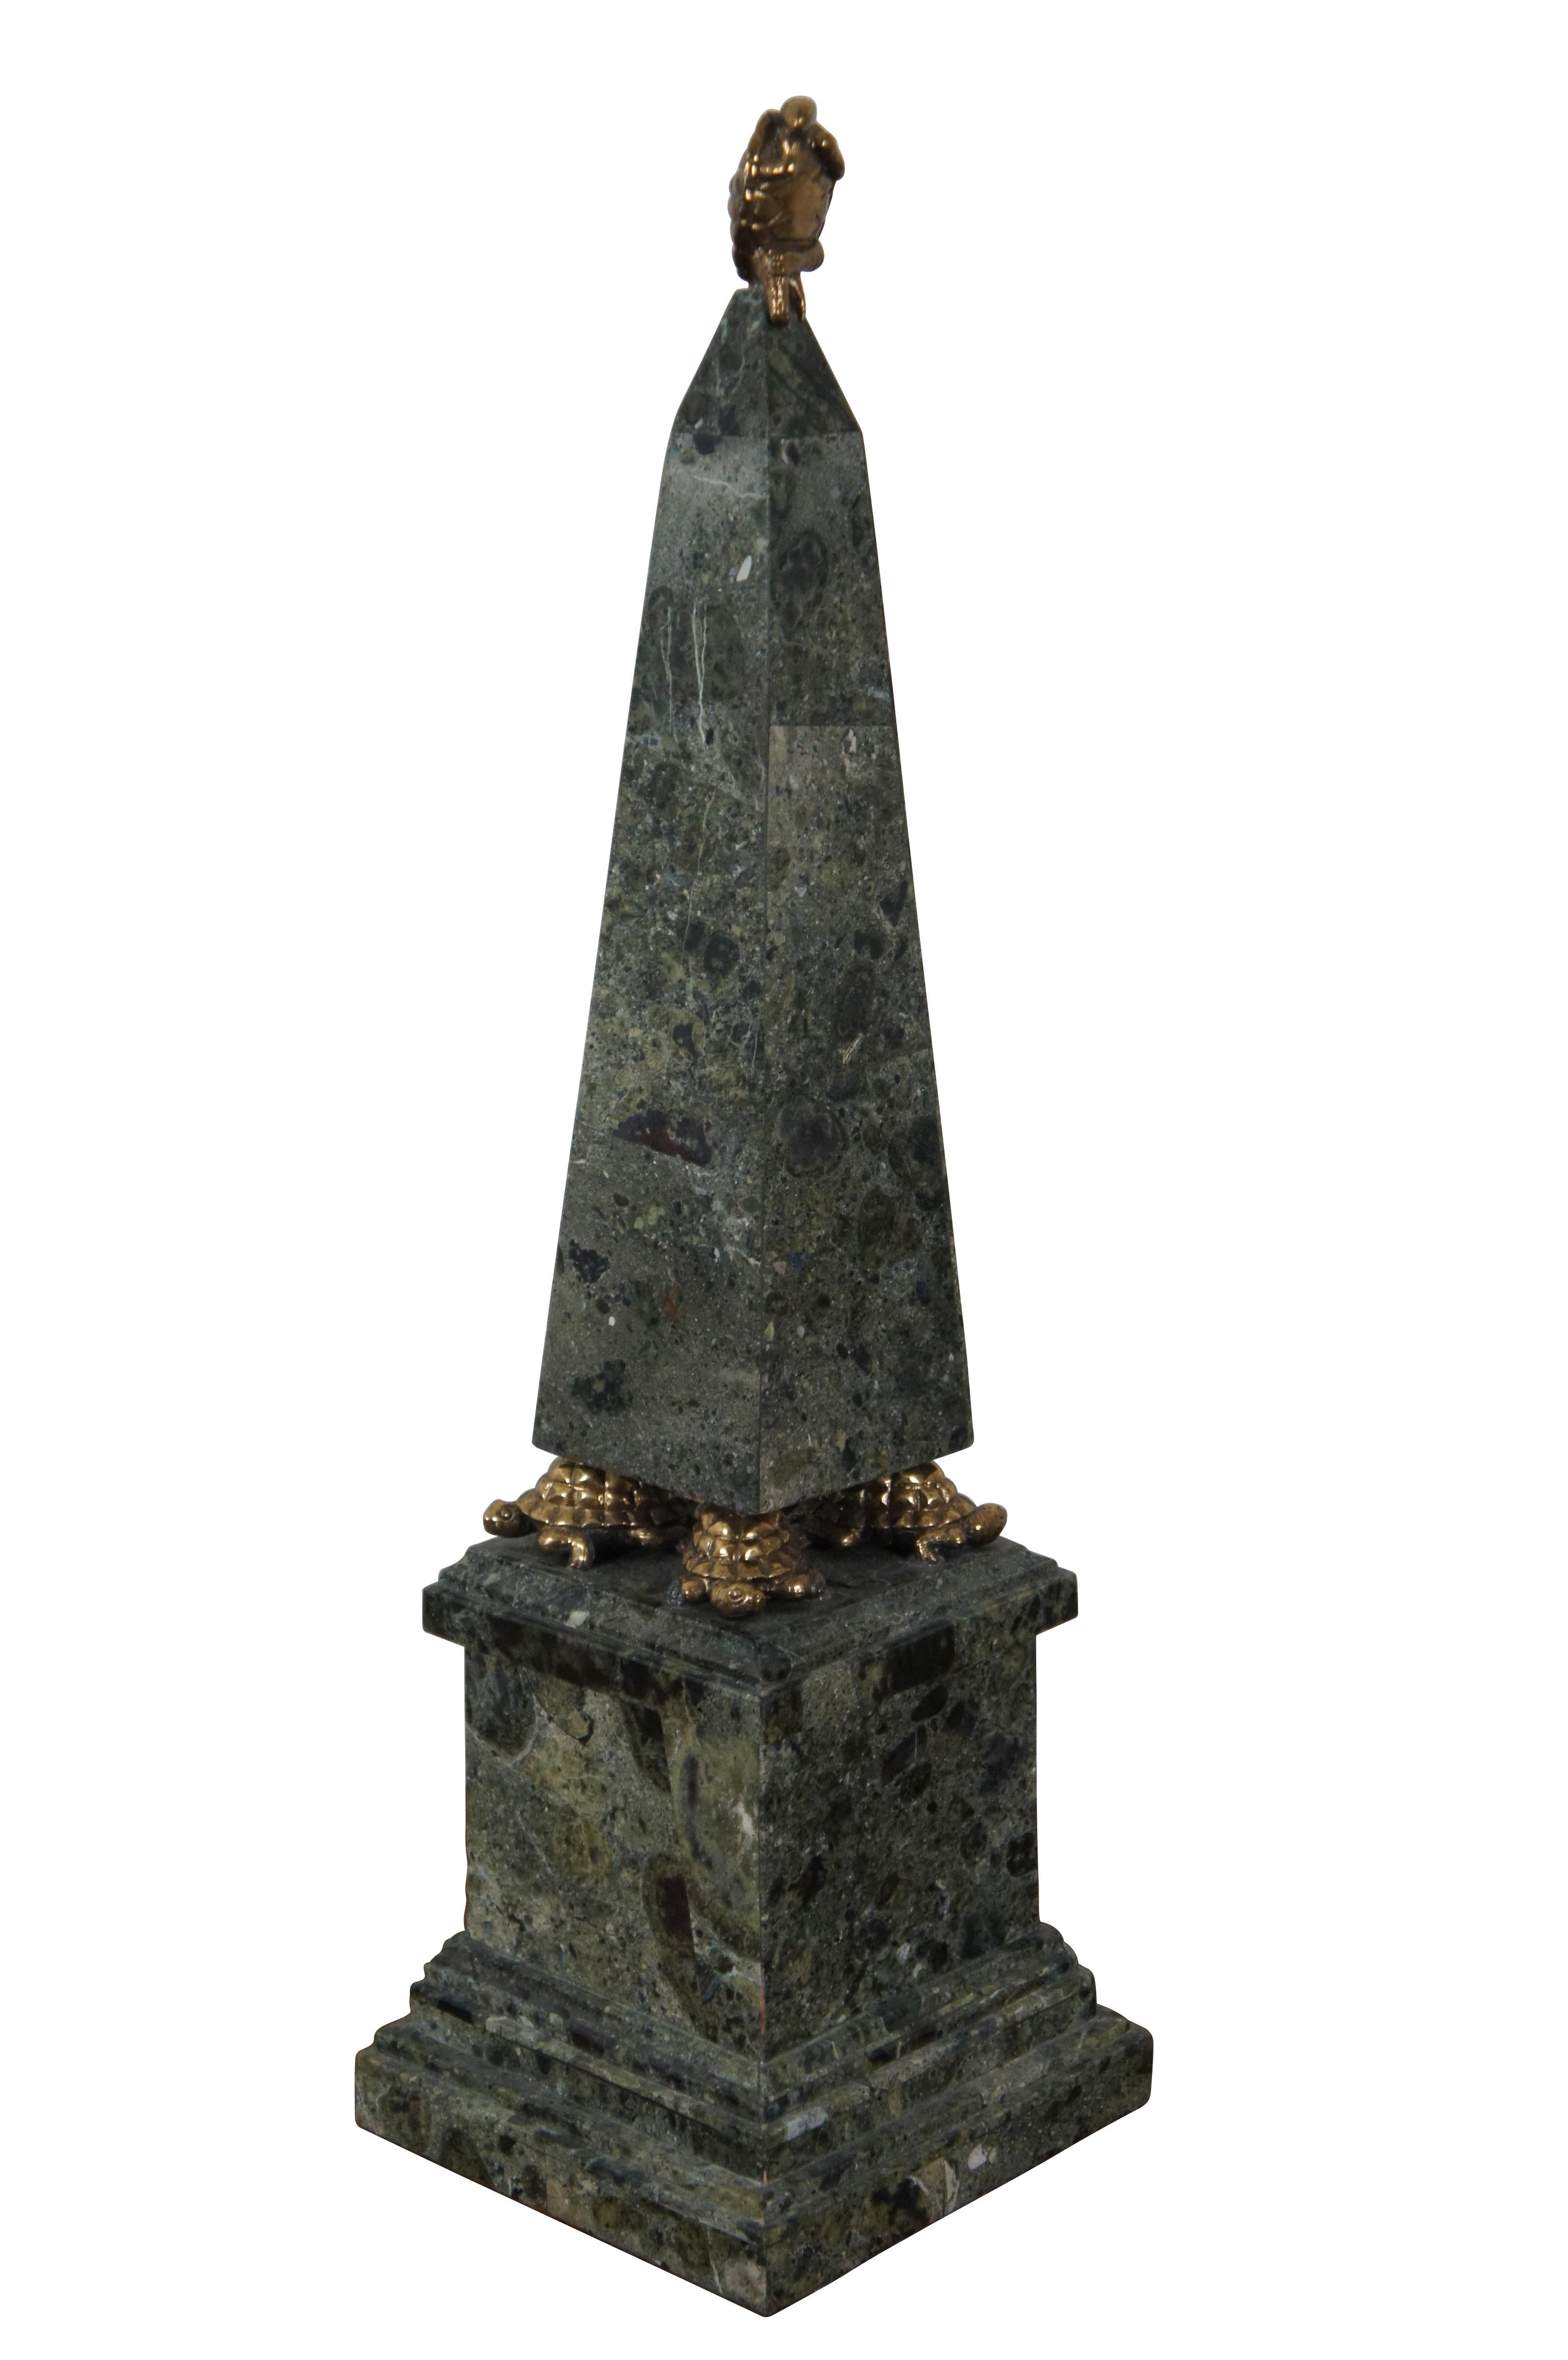 Vintage Maitland Smith Stein tesslated Marmor Stein Obelisk Skulptur steht auf dem Rücken von vier Messing-Schildkröten, die wiederum sitzen auf einem quadratischen Sockel.  An der Spitze des Obelisken sitzt eine weitere Schildkröte aus Messing,